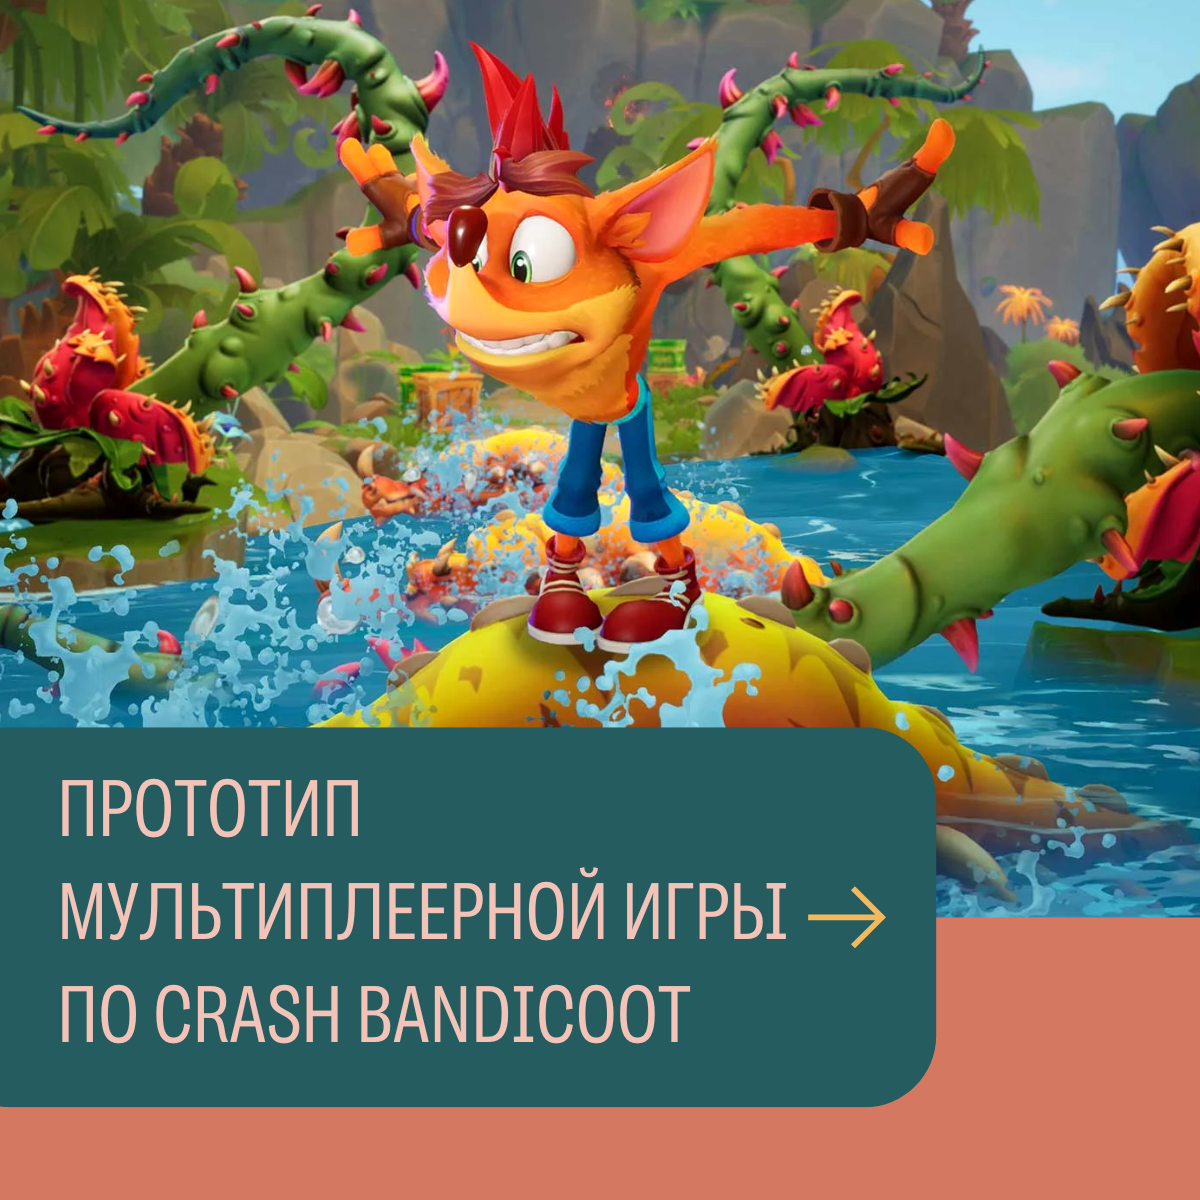 Прототип мультиплеерной игры по Crash Bandicoot